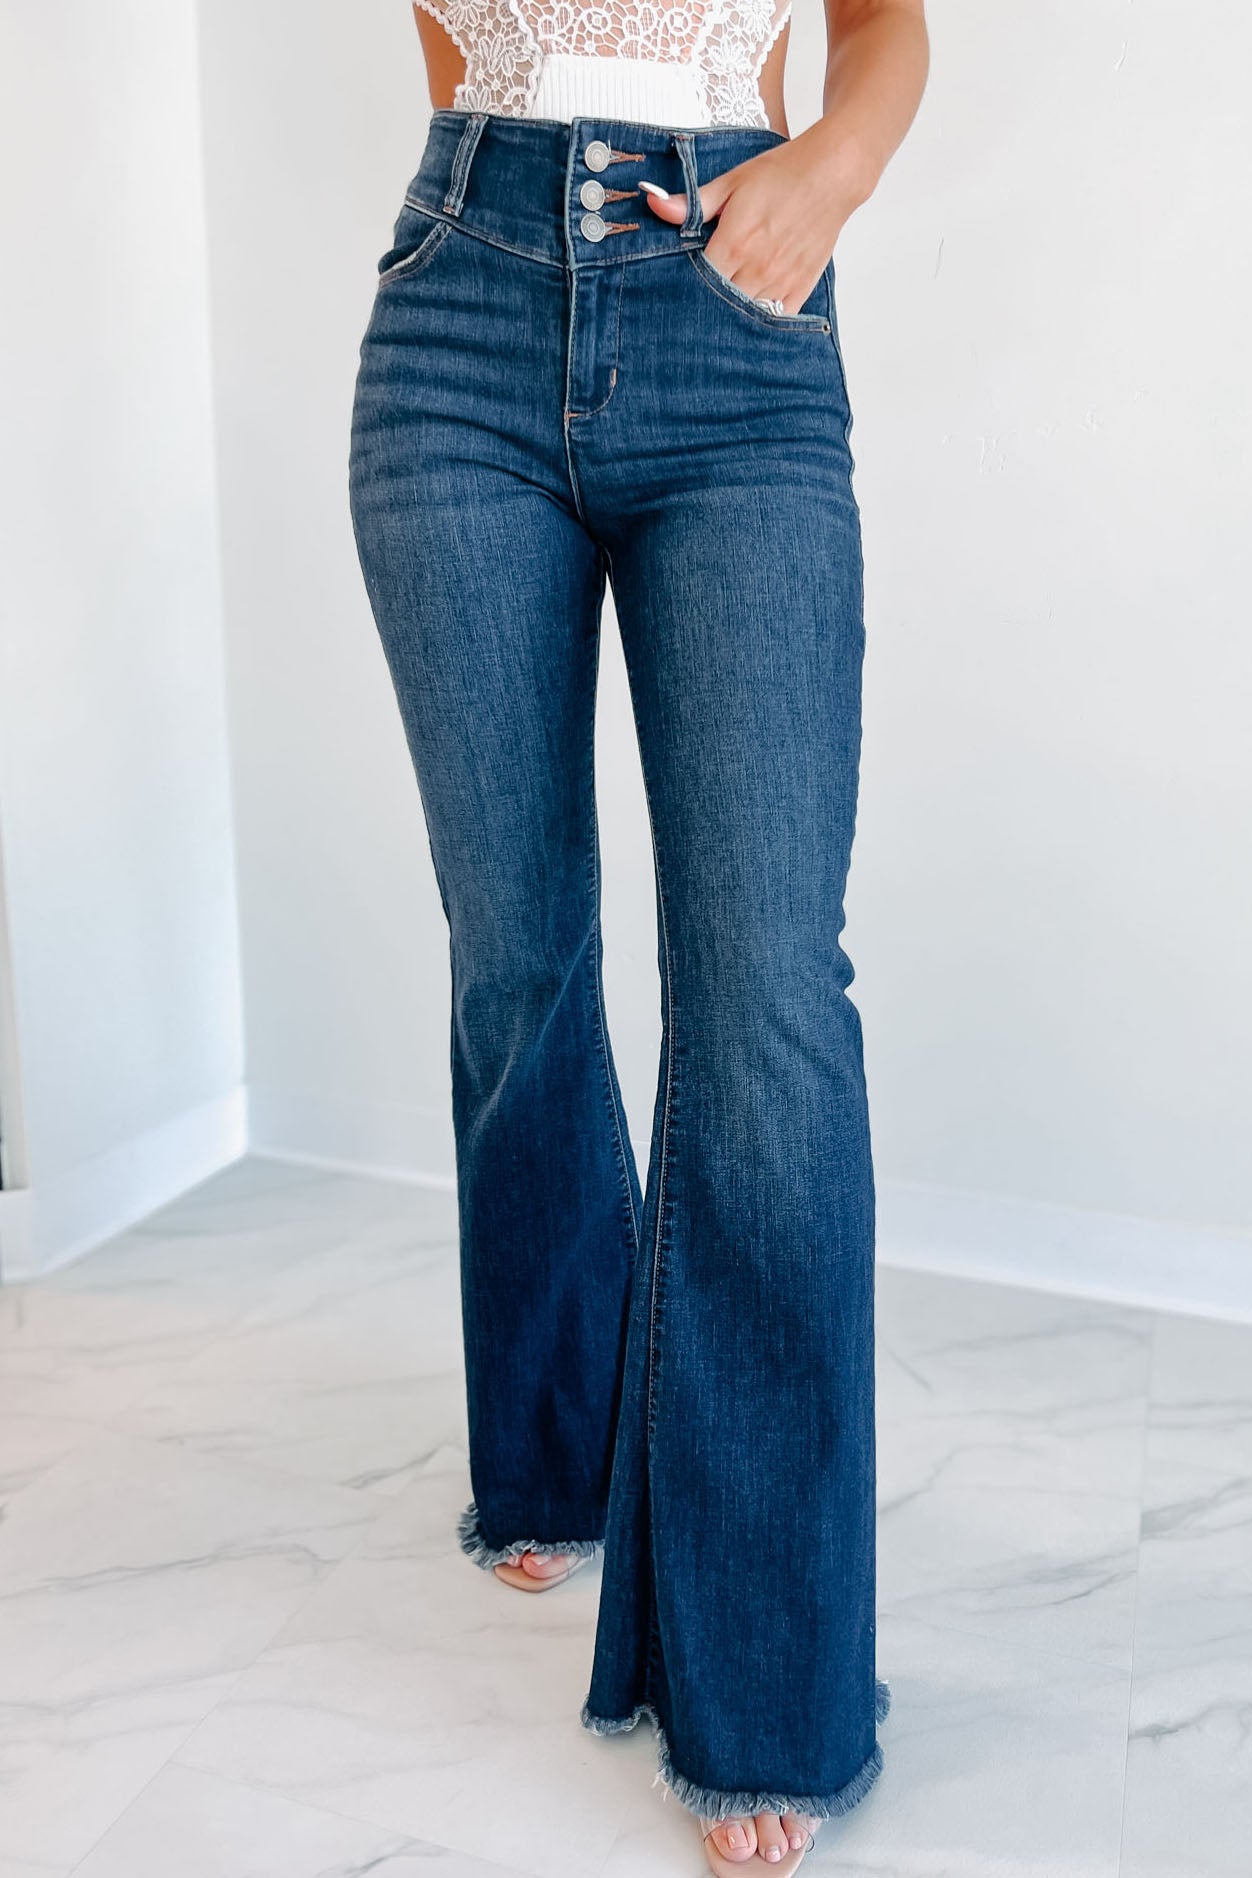 Nilton High Rise Triple Button Sneak Peek Flare Jeans (Dark) - NanaMacs